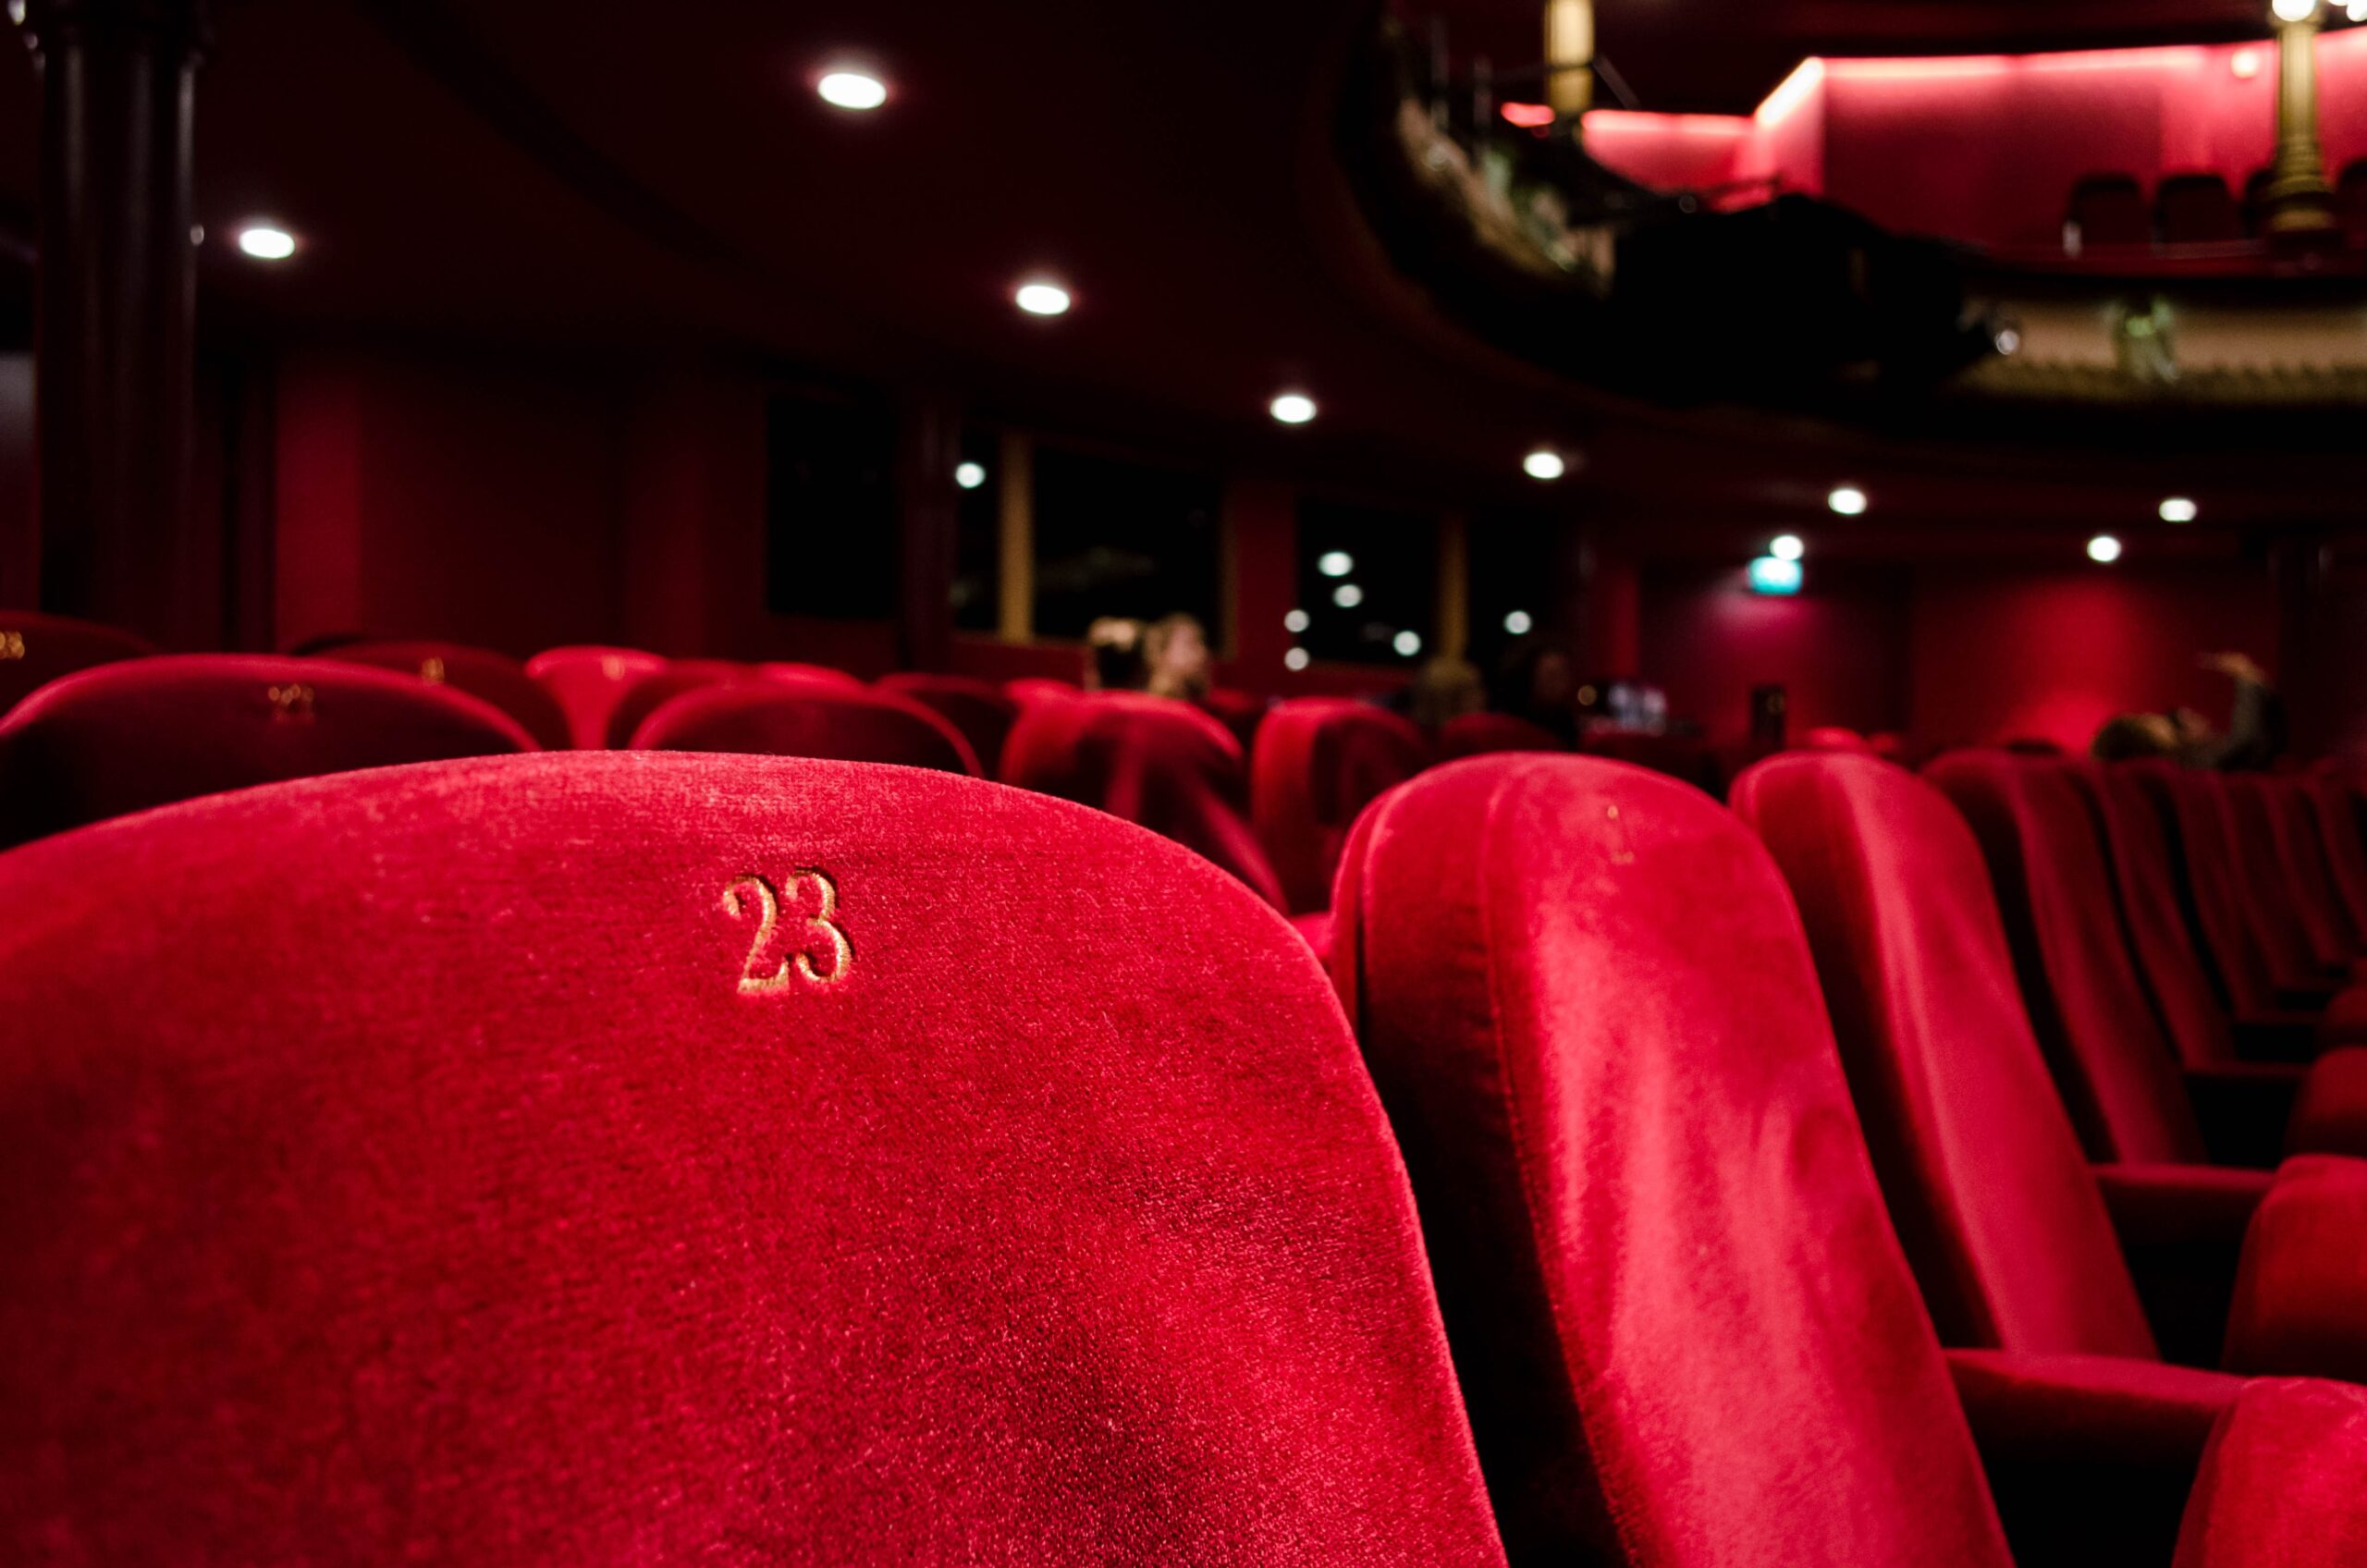 Teatri e cinema verso il 75-80% della capienza: l'obiettivo resta il ritorno alle sale piene